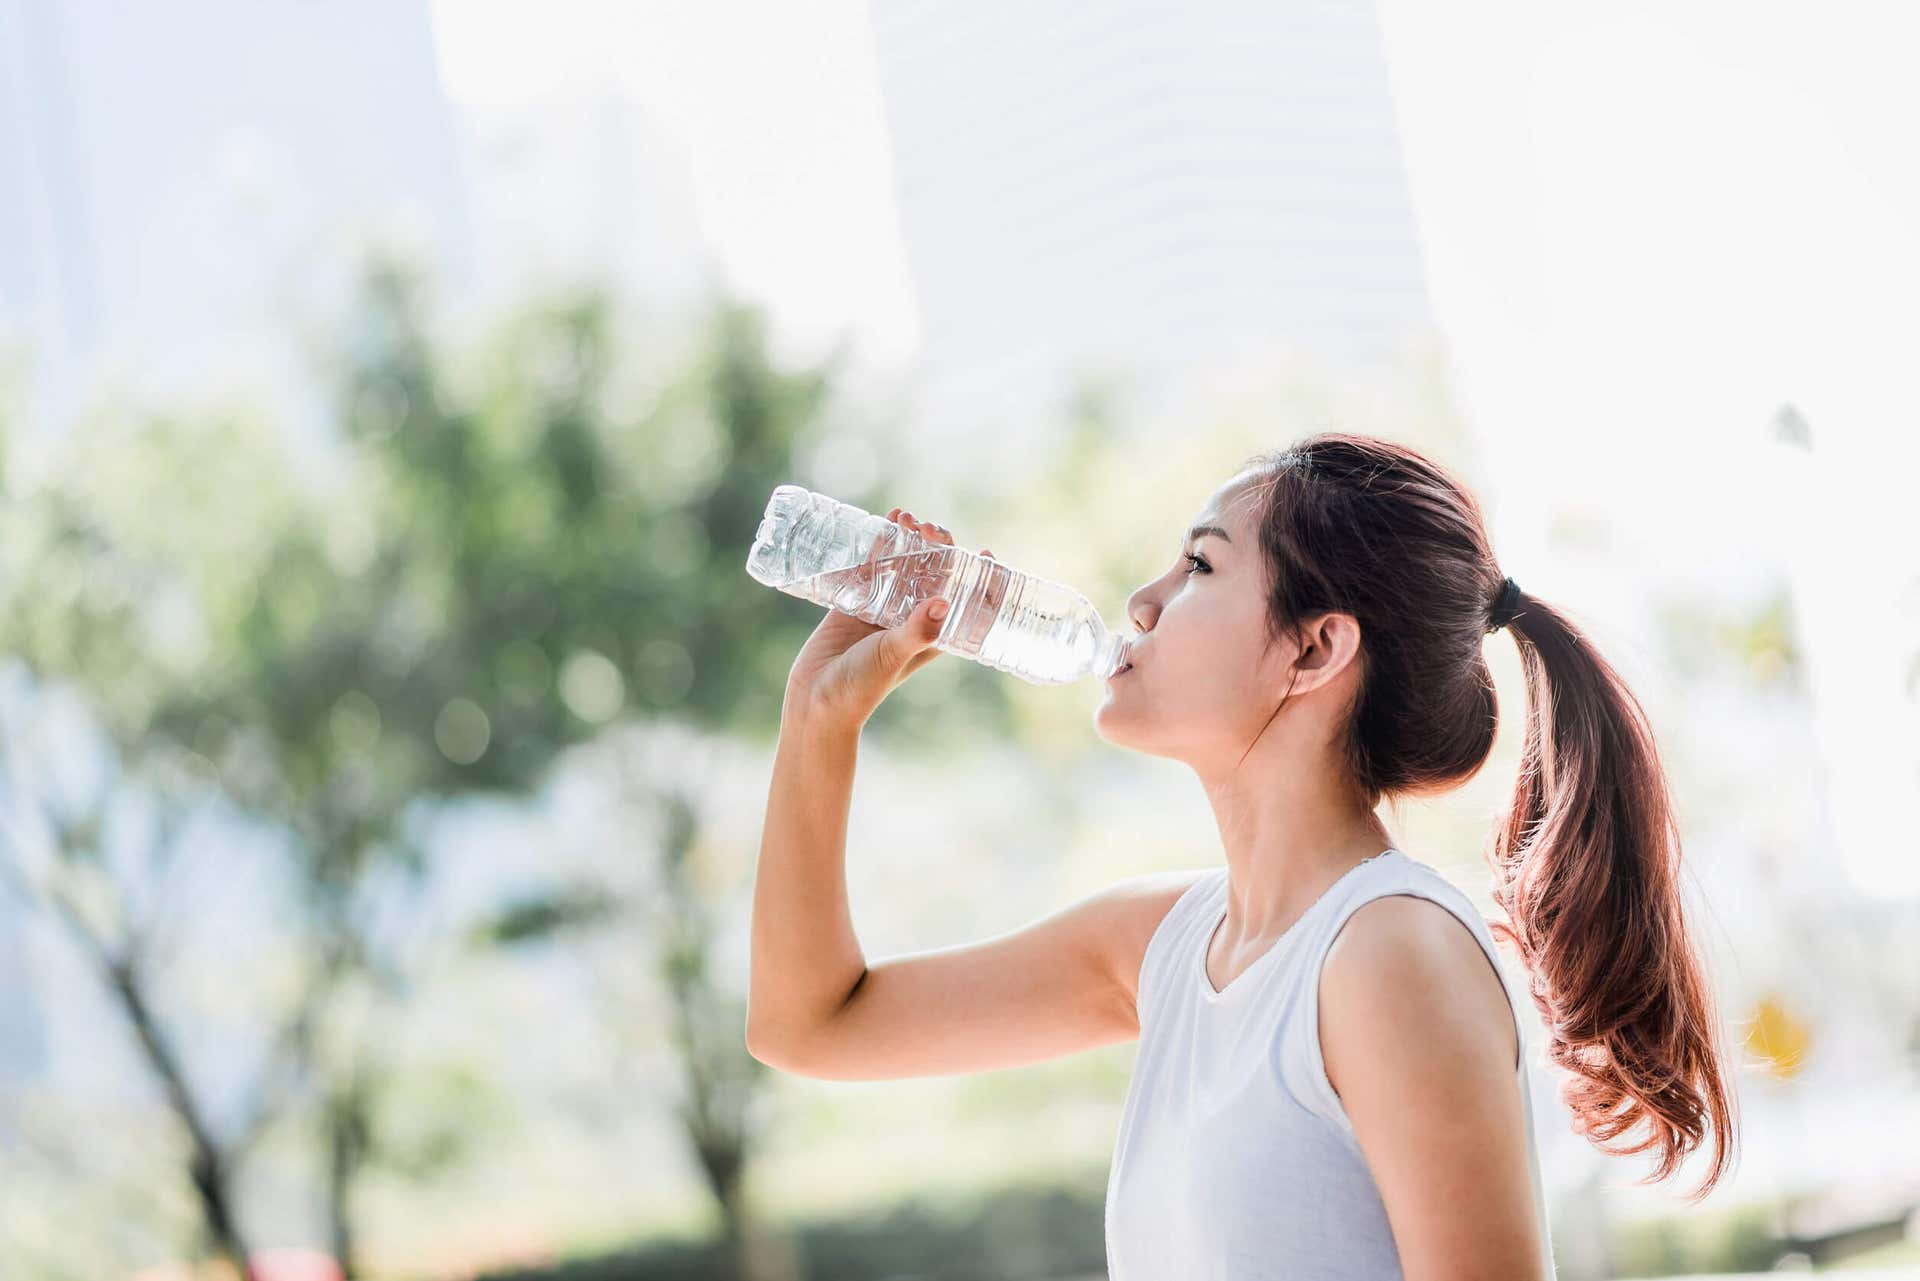 Tomar agua durante el ejercicio es vital.